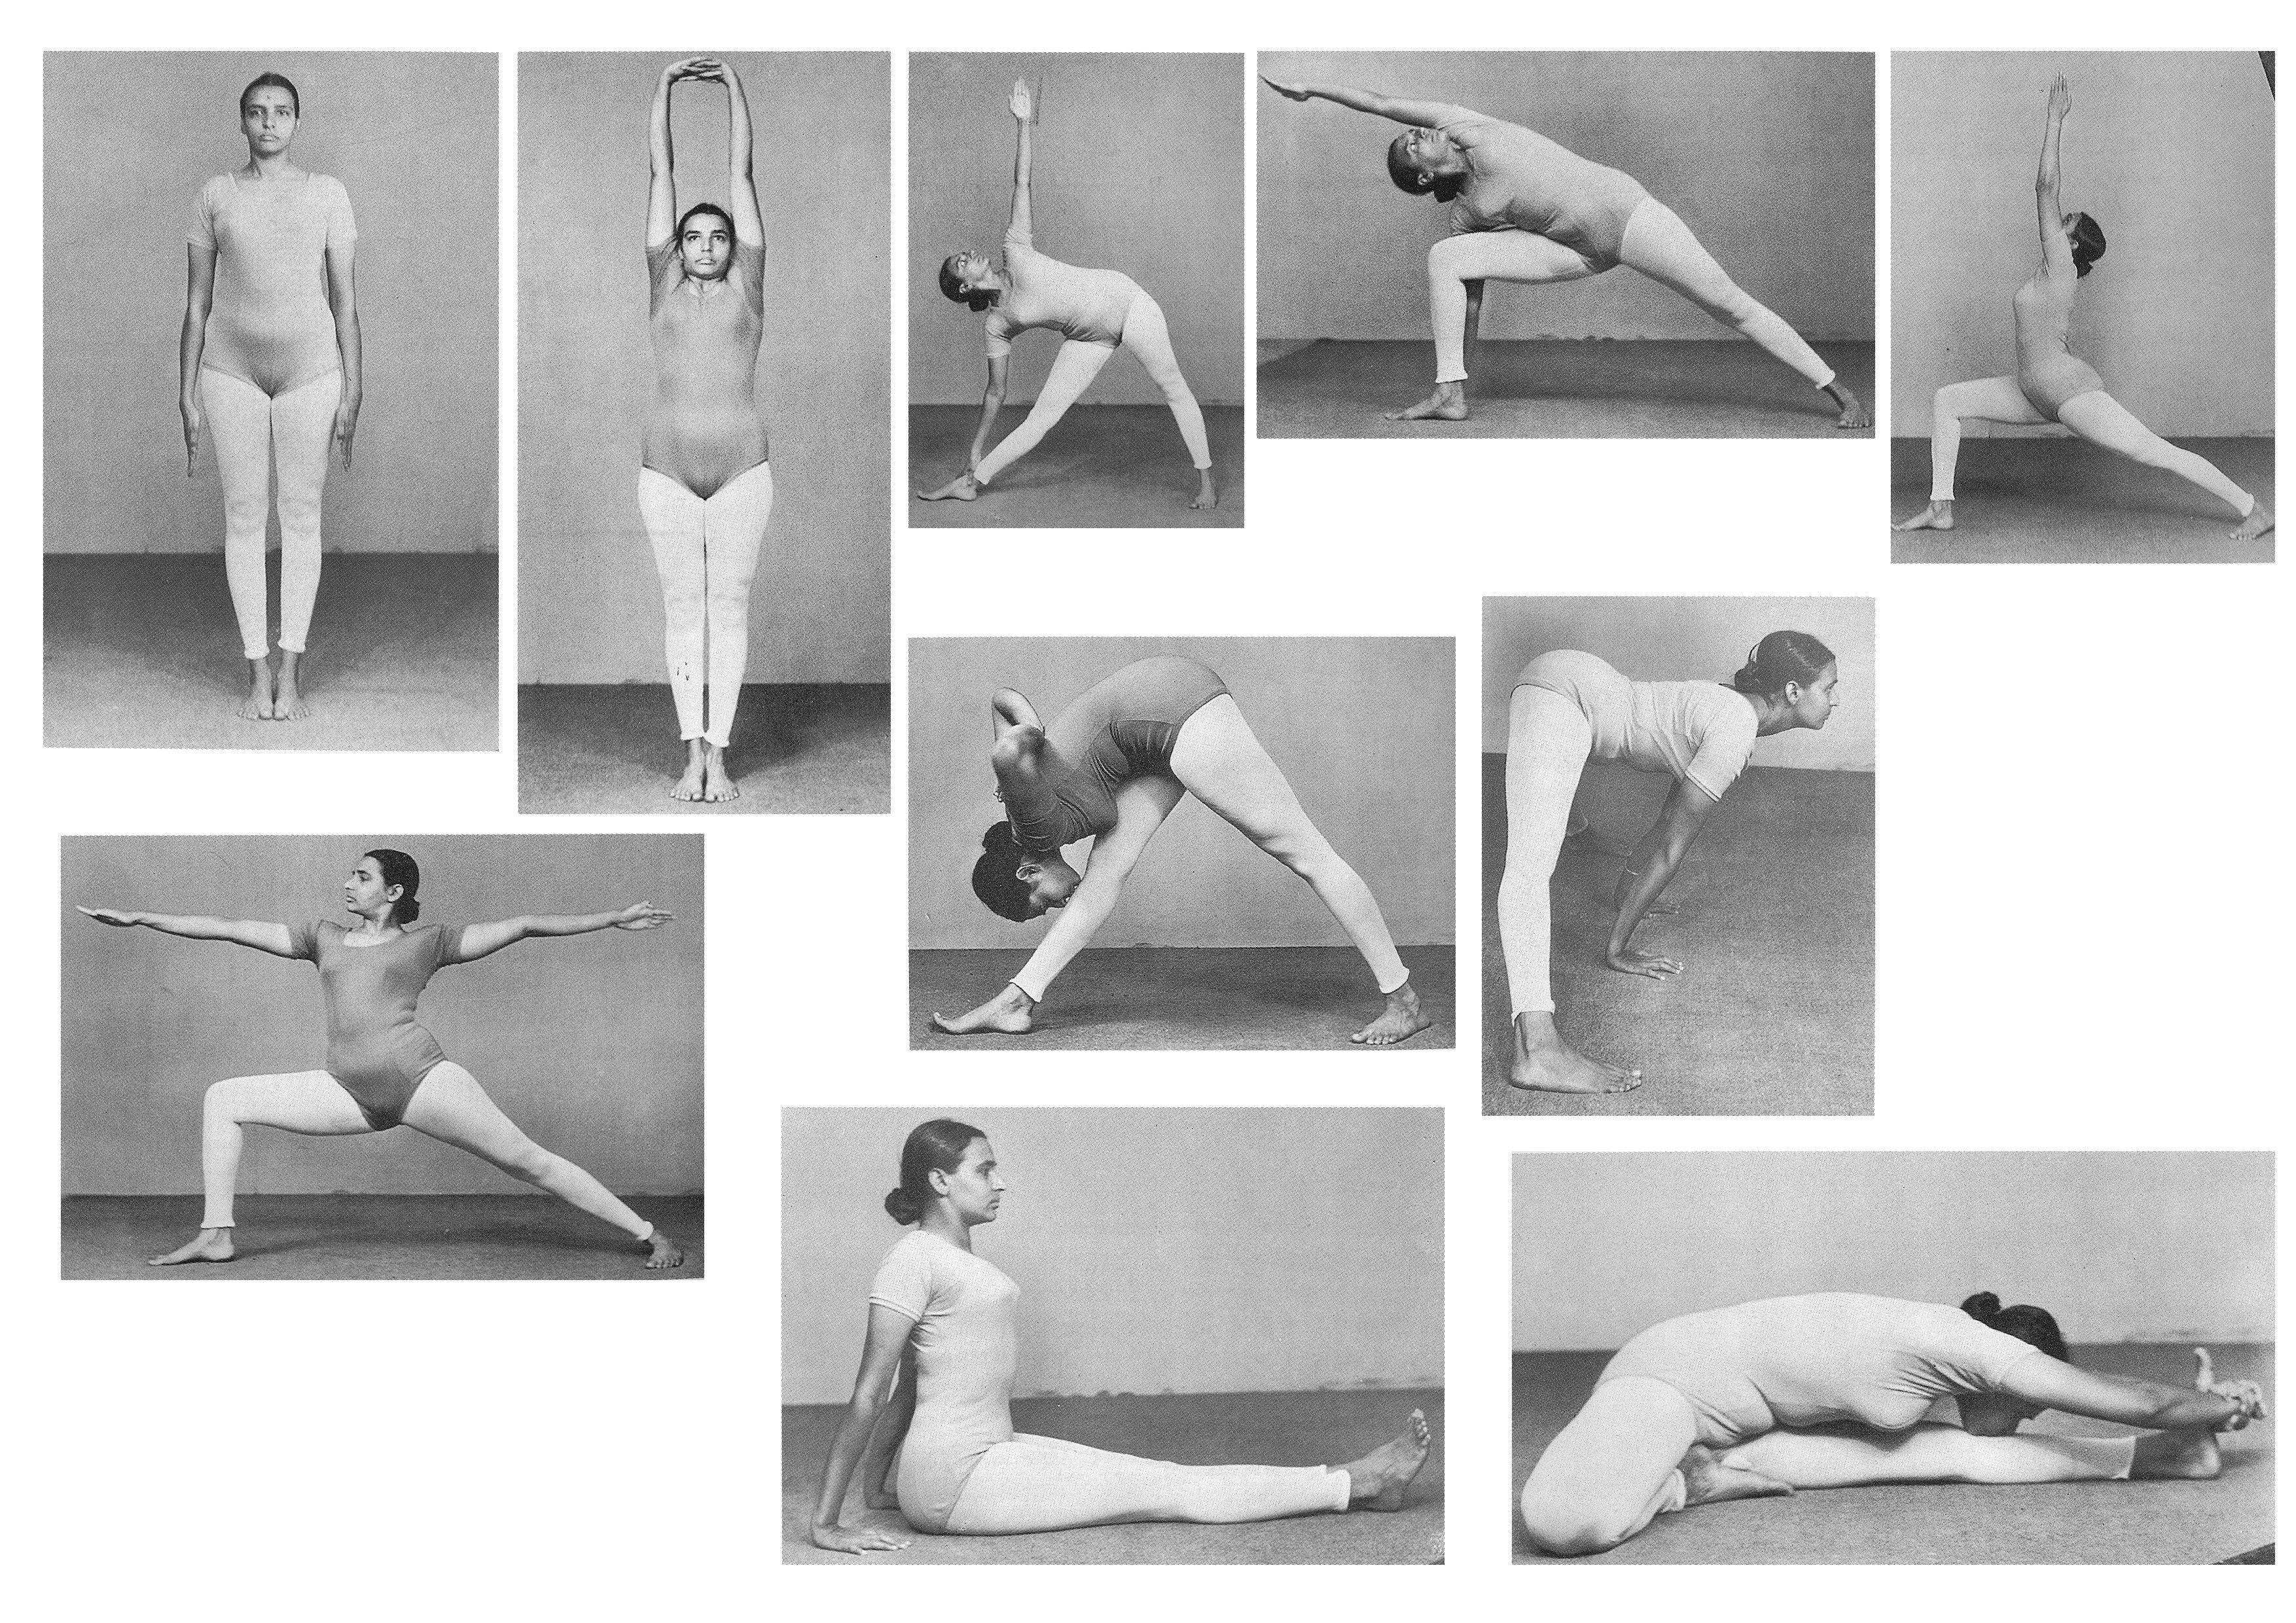 Йога айенгара: особенности, отличия, правильная практика, асаны для начинающих